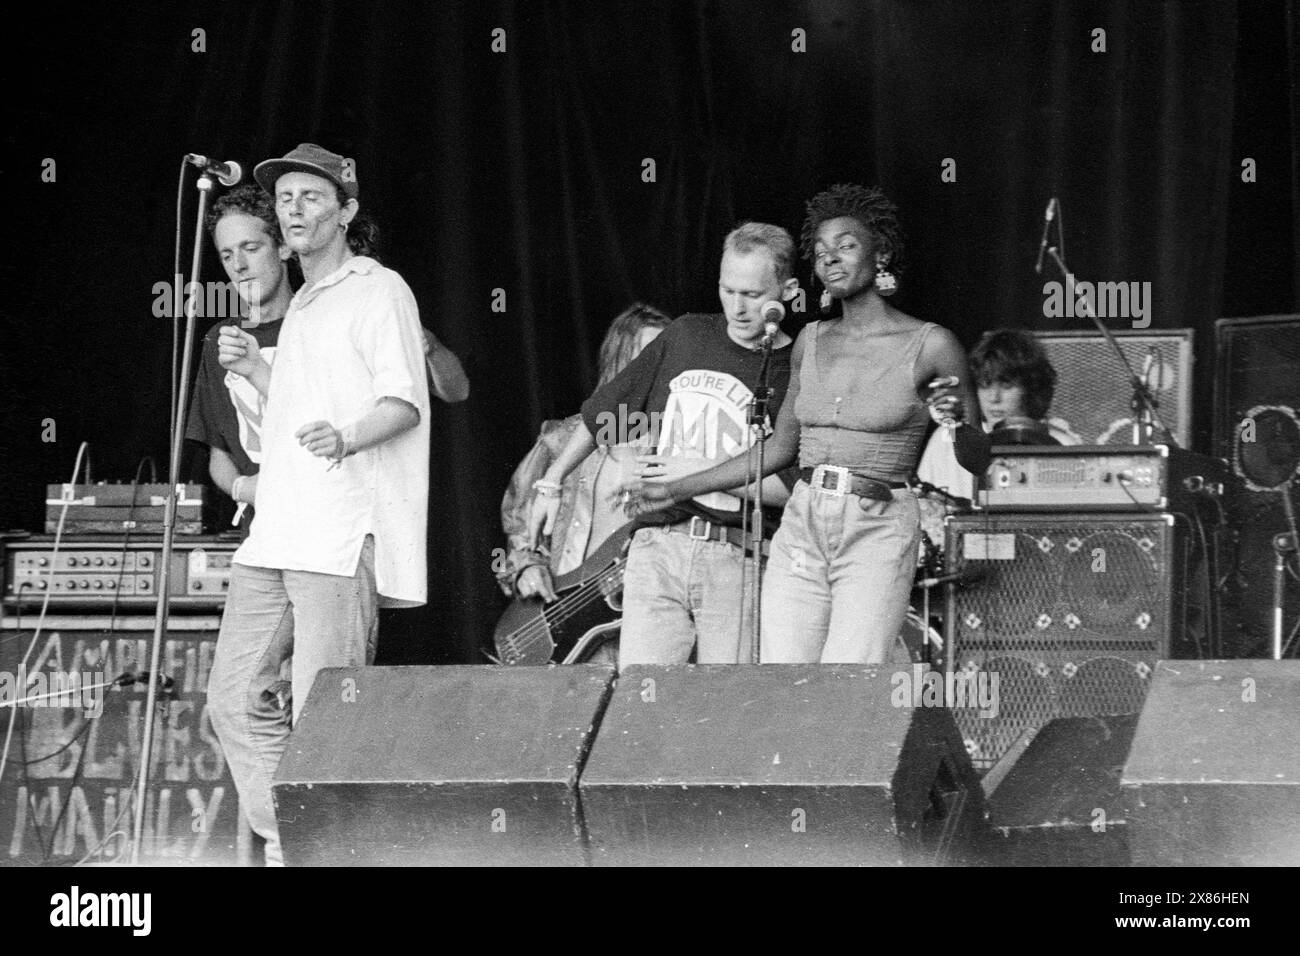 MOONFLOWERS, GLASTONBURY FESTIVAL, 1992: The West Country band The Moonflowers suonano il NME Stage al Glastonbury Festival, Pilton Farm, Somerset, Inghilterra il 26 giugno 1992. INFO: I Moonflowers sono un gruppo musicale di Bristol noto per il loro eclettico mix di rock psichedelico e influenze folk. Attivi negli anni '1990, hanno guadagnato un seguito di culto con le loro esibizioni vibranti e il suono innovativo, diventando una parte notevole della scena musicale locale. Foto Stock